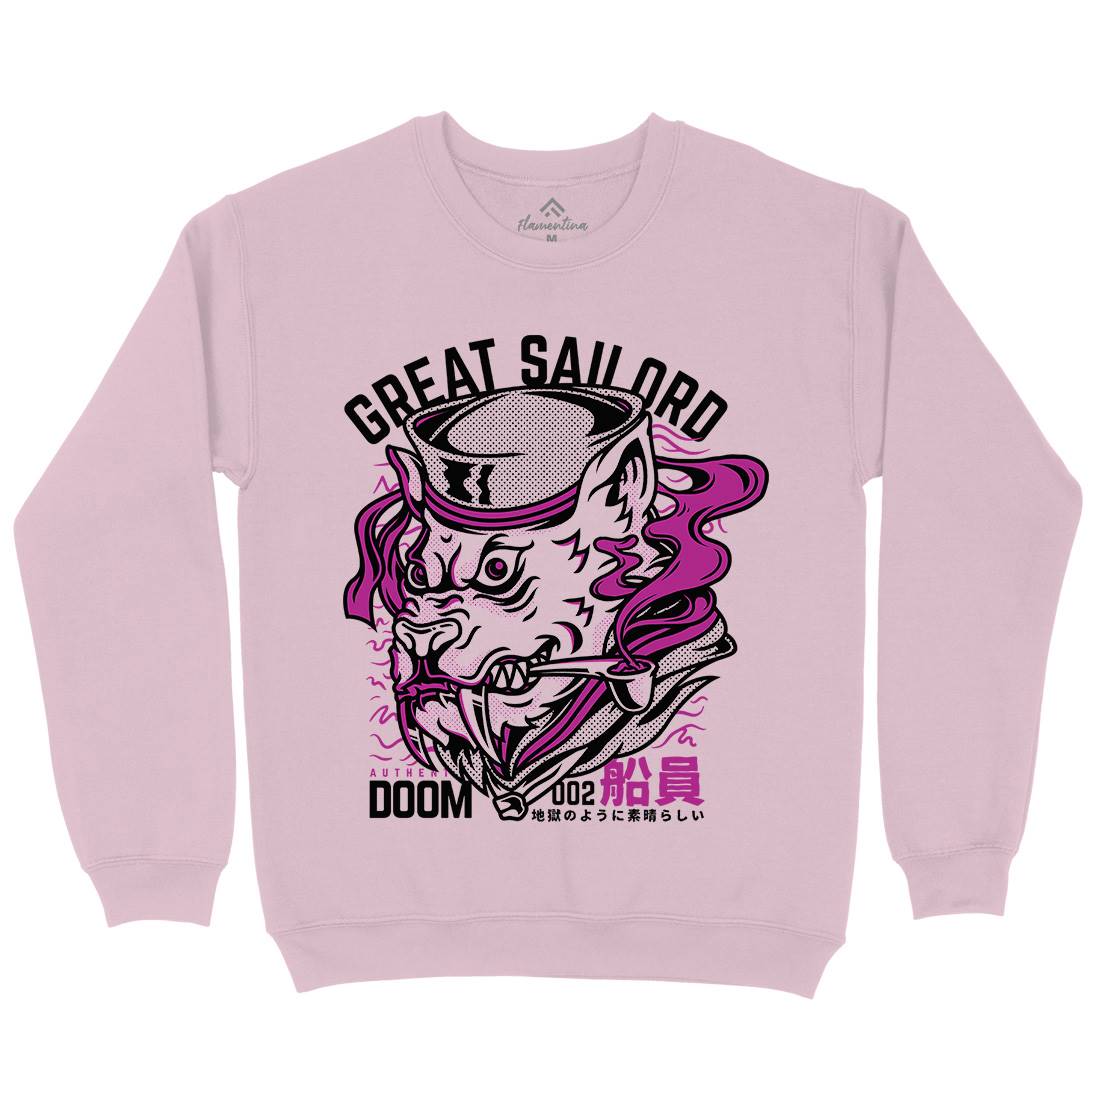 Great Sailord Kids Crew Neck Sweatshirt Navy D601